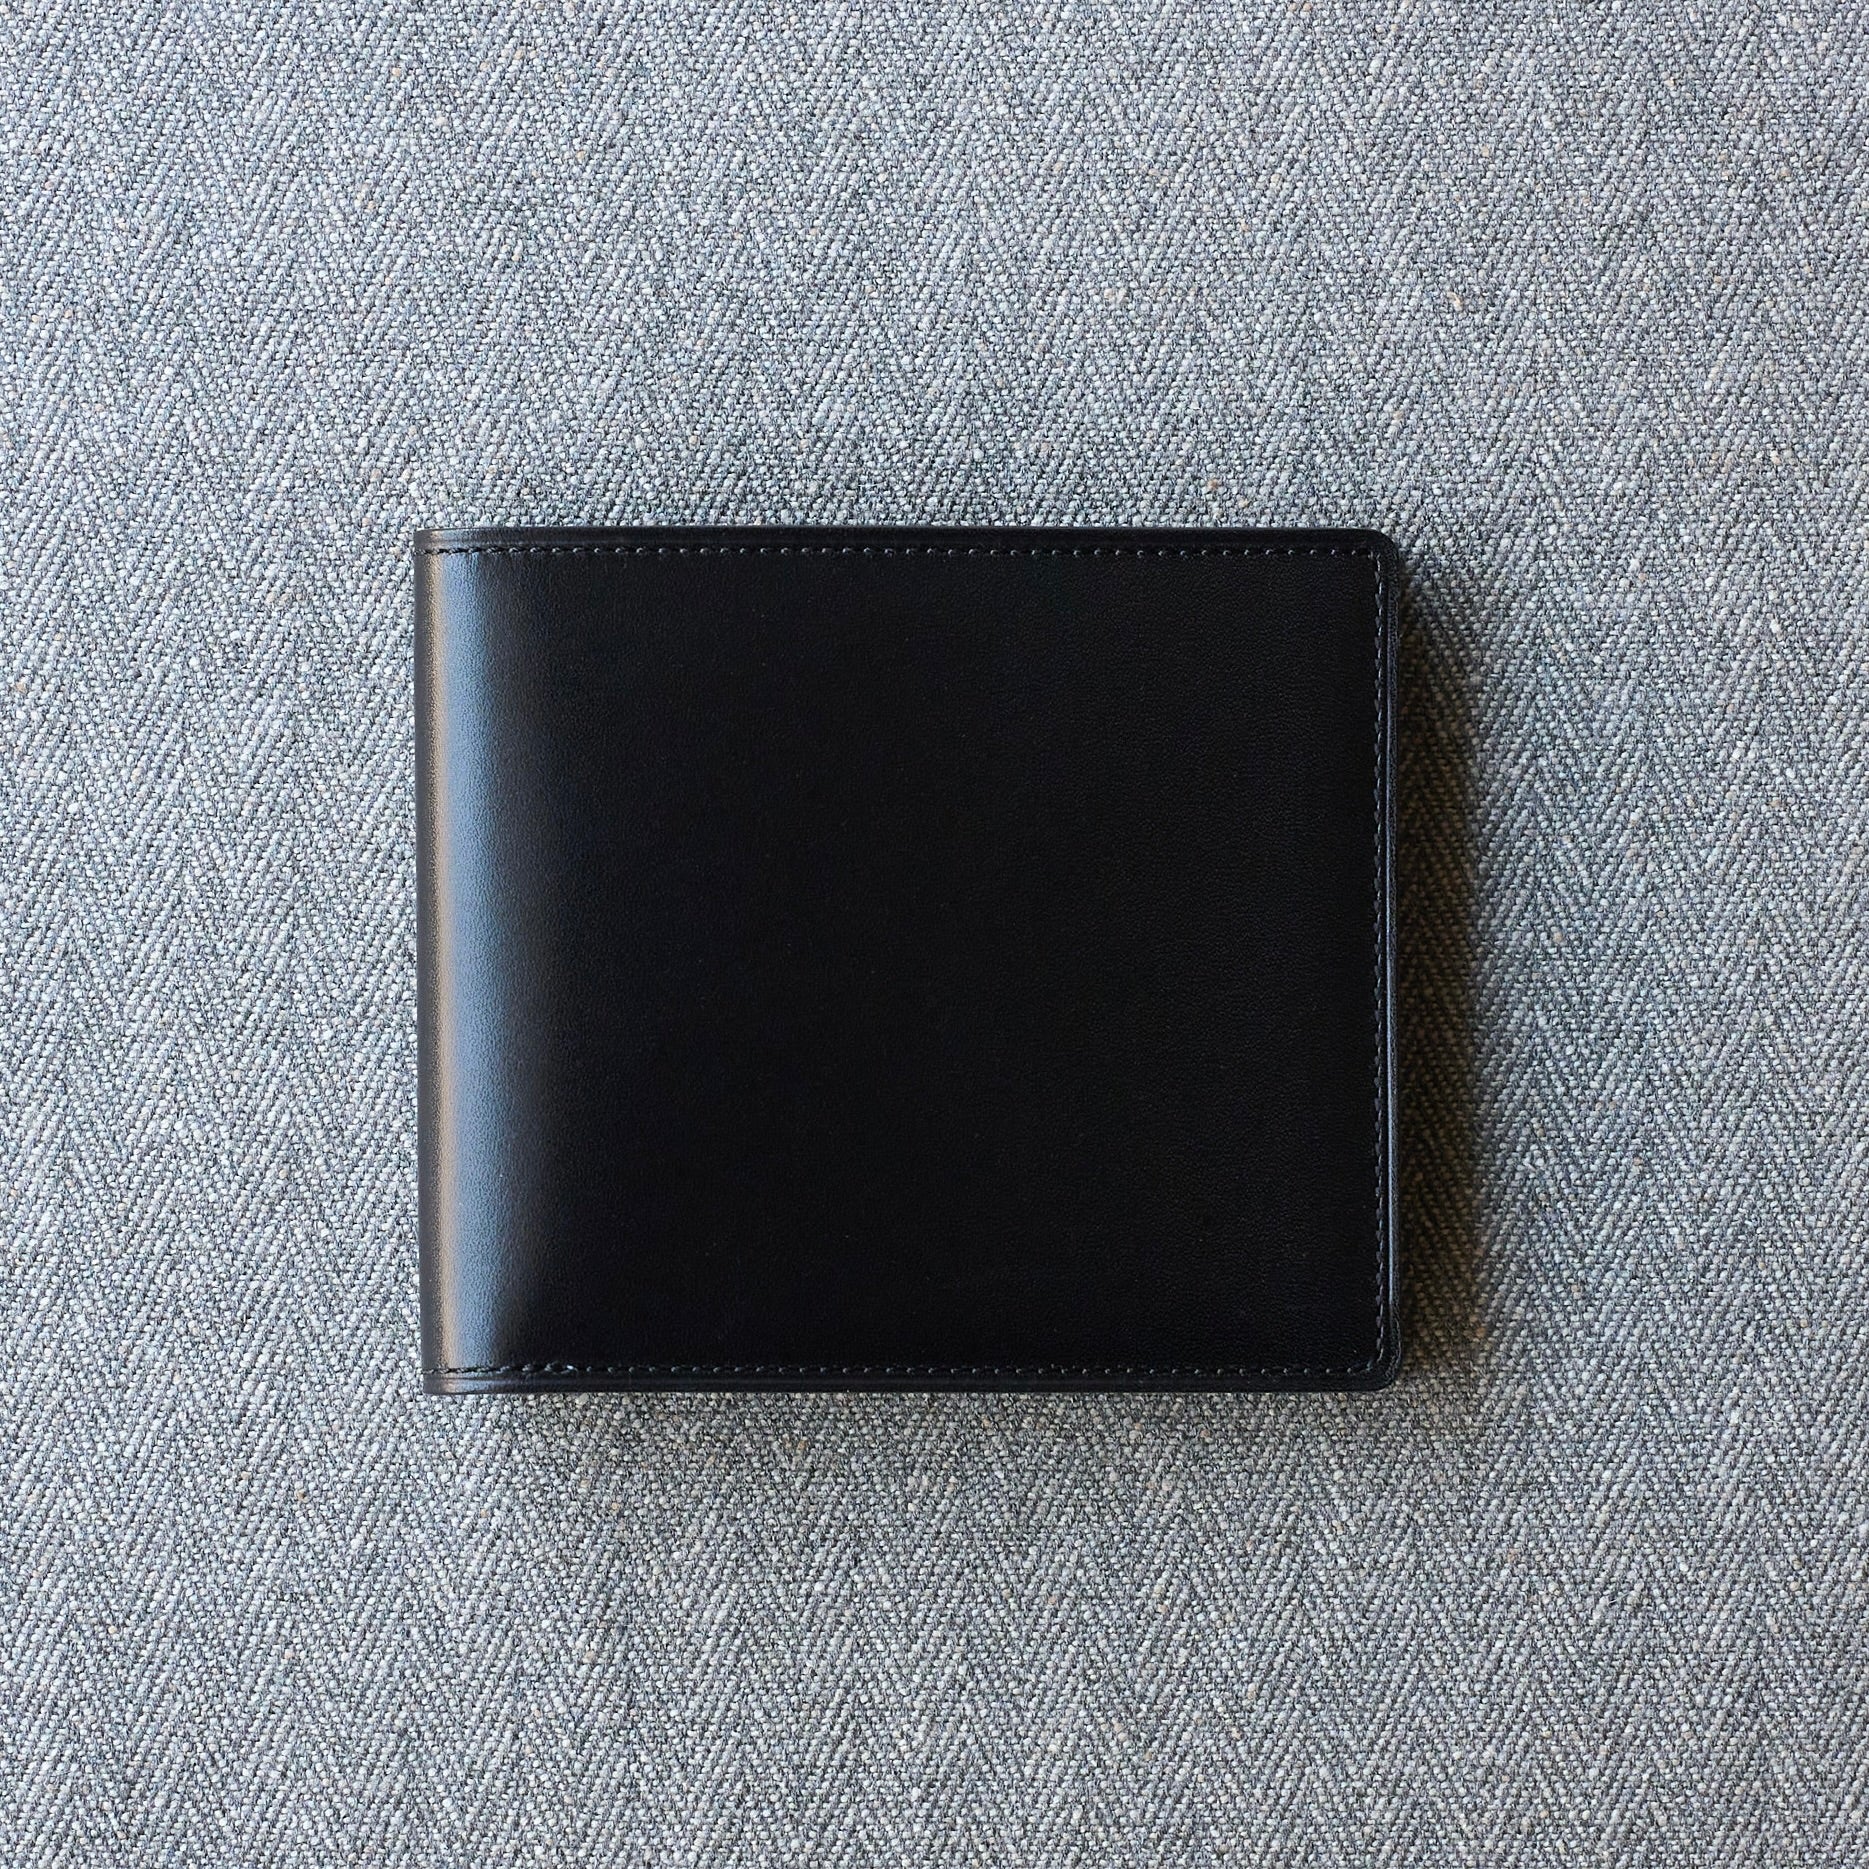 Bifold Wallet in black smooth calfskin